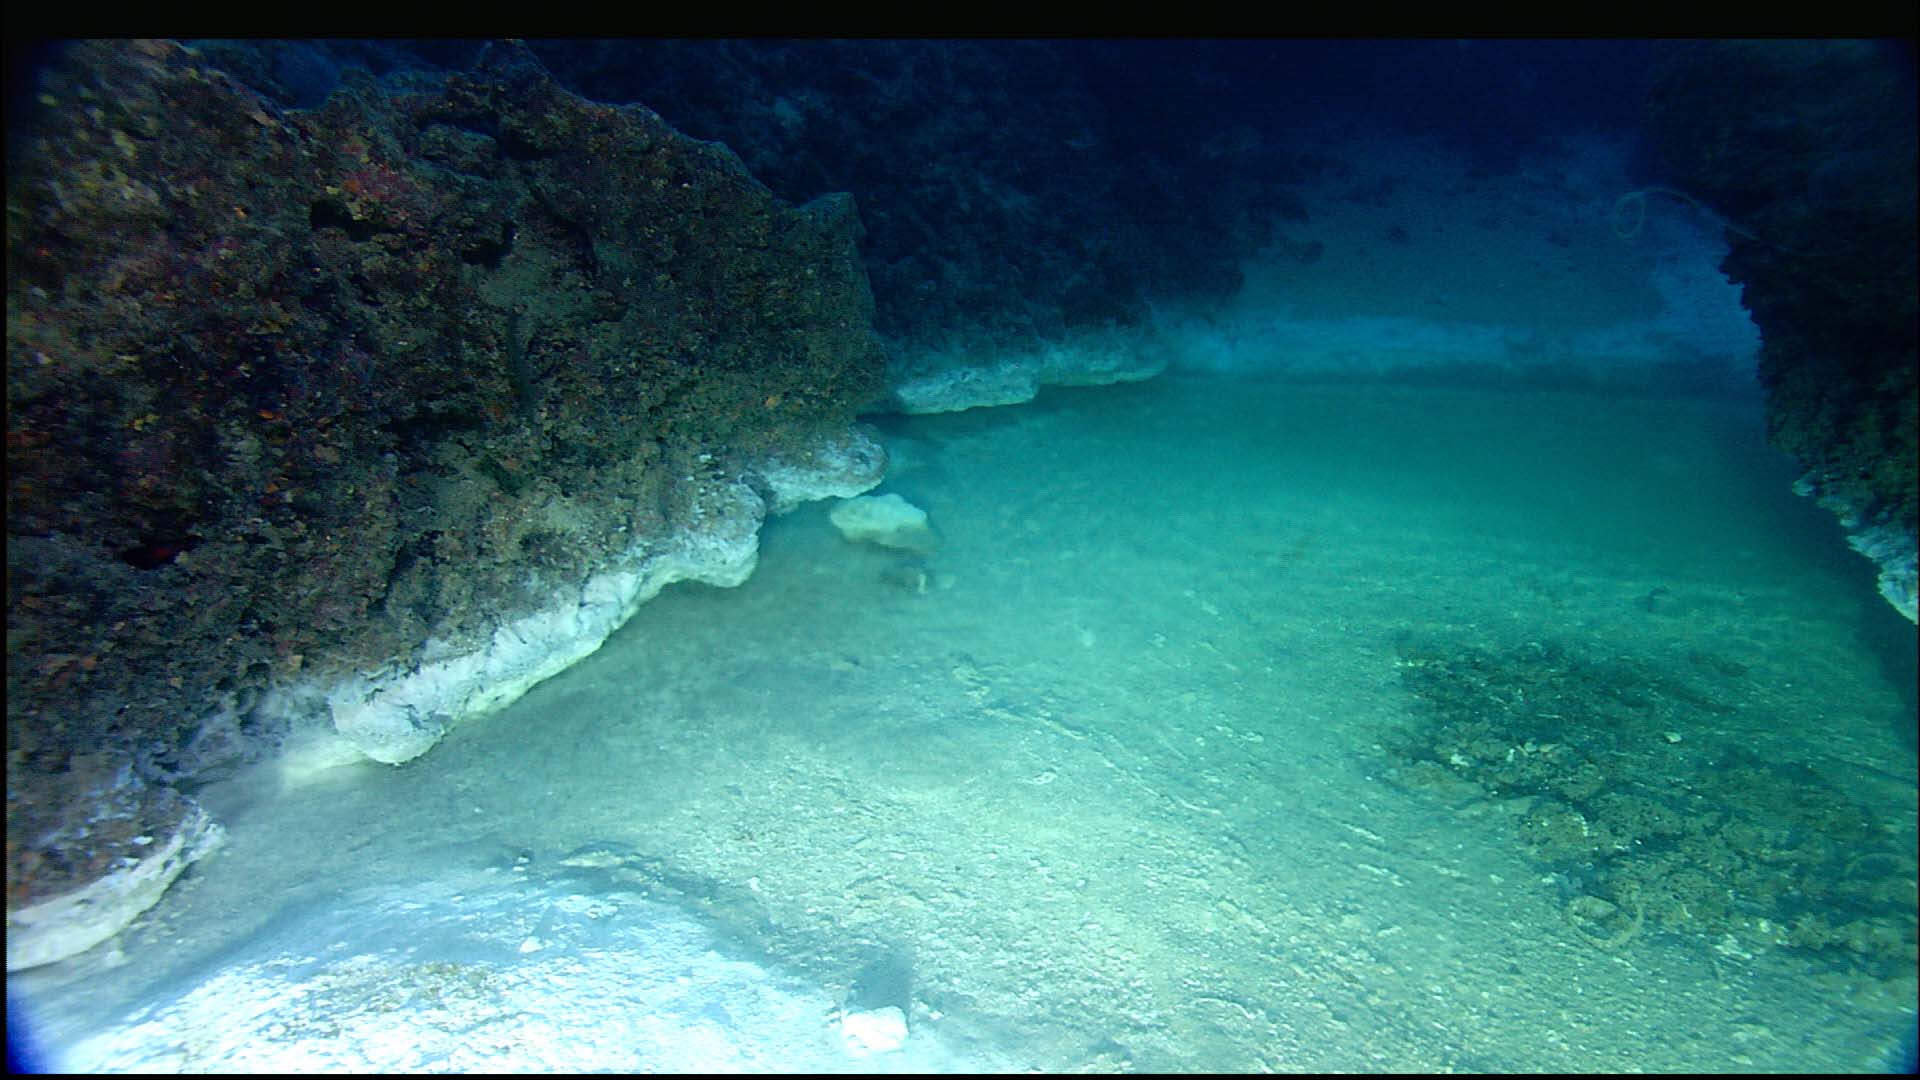 Deep Ocean Floor